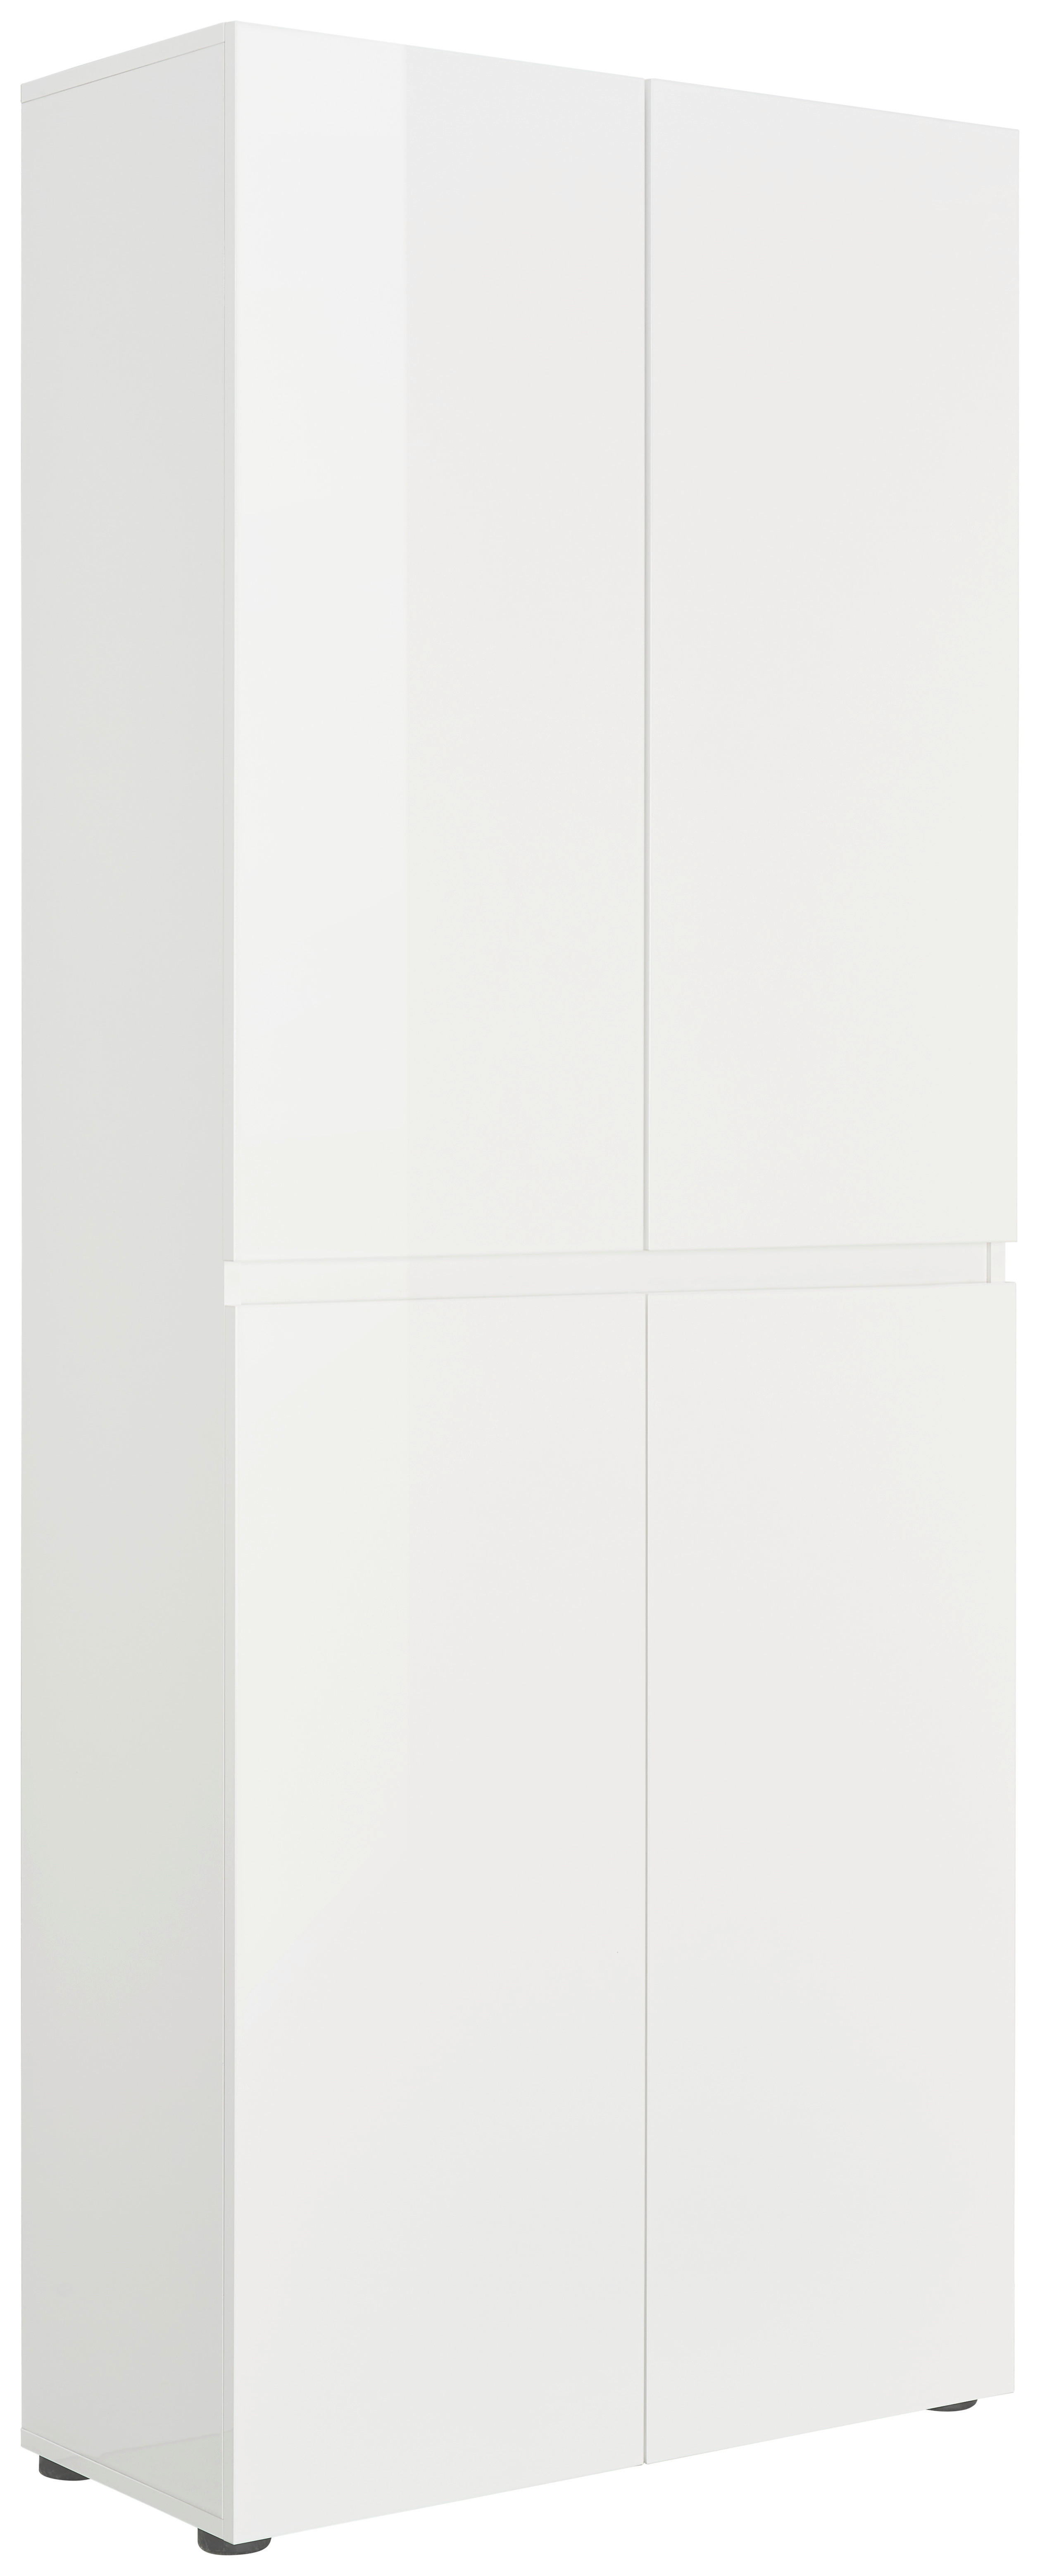 SCHUHSCHRANK 80/200/34 cm  - Schwarz/Weiß, Design, Holzwerkstoff/Kunststoff (80/200/34cm) - Xora